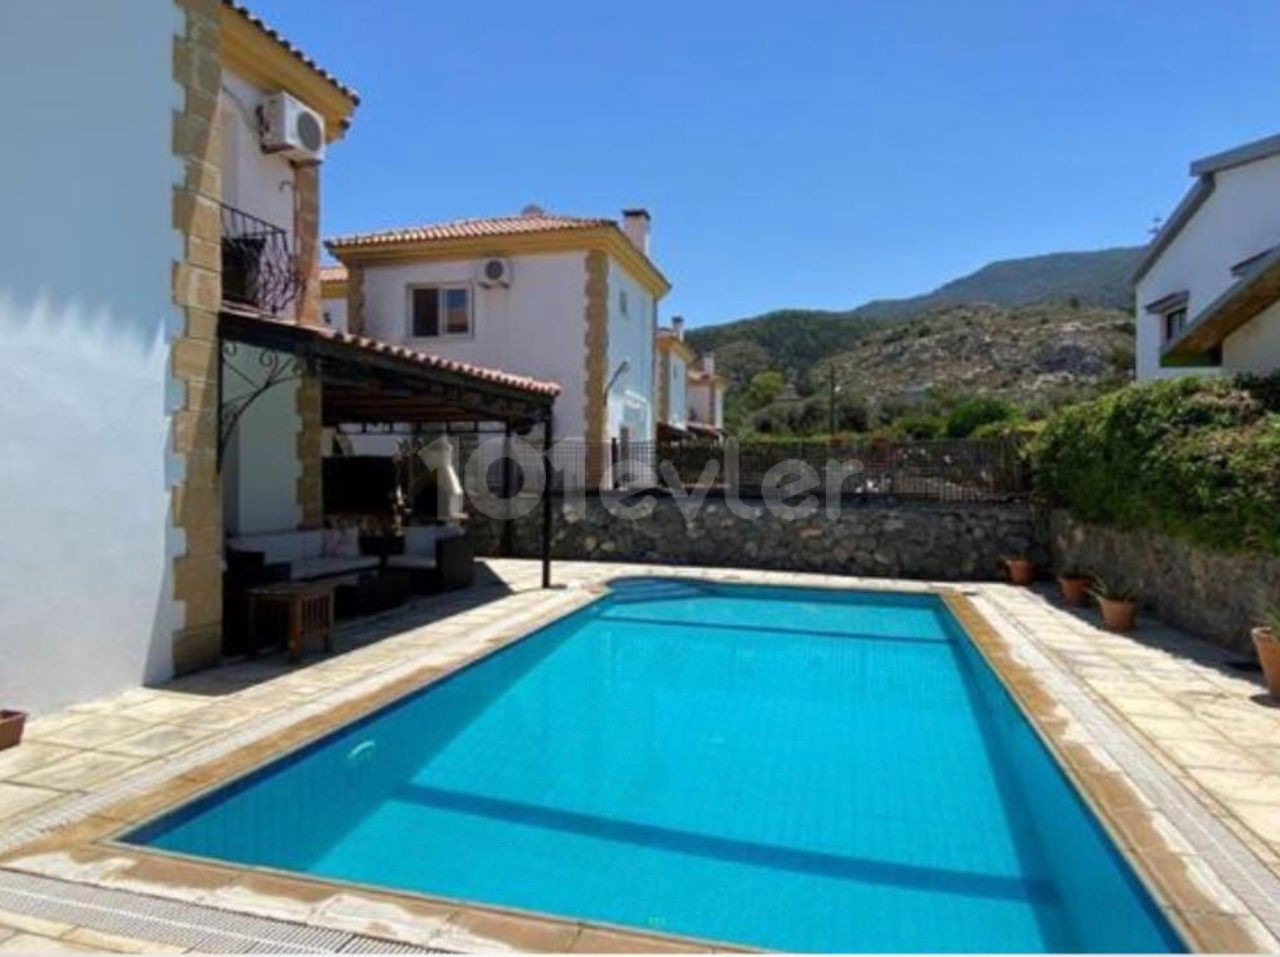 141 м², вилла 3+1 в Алсанджаке, Кирения, частный бассейн, терраса, гостиная с камином, большой сад, кондиционер, склад, вид на горы.